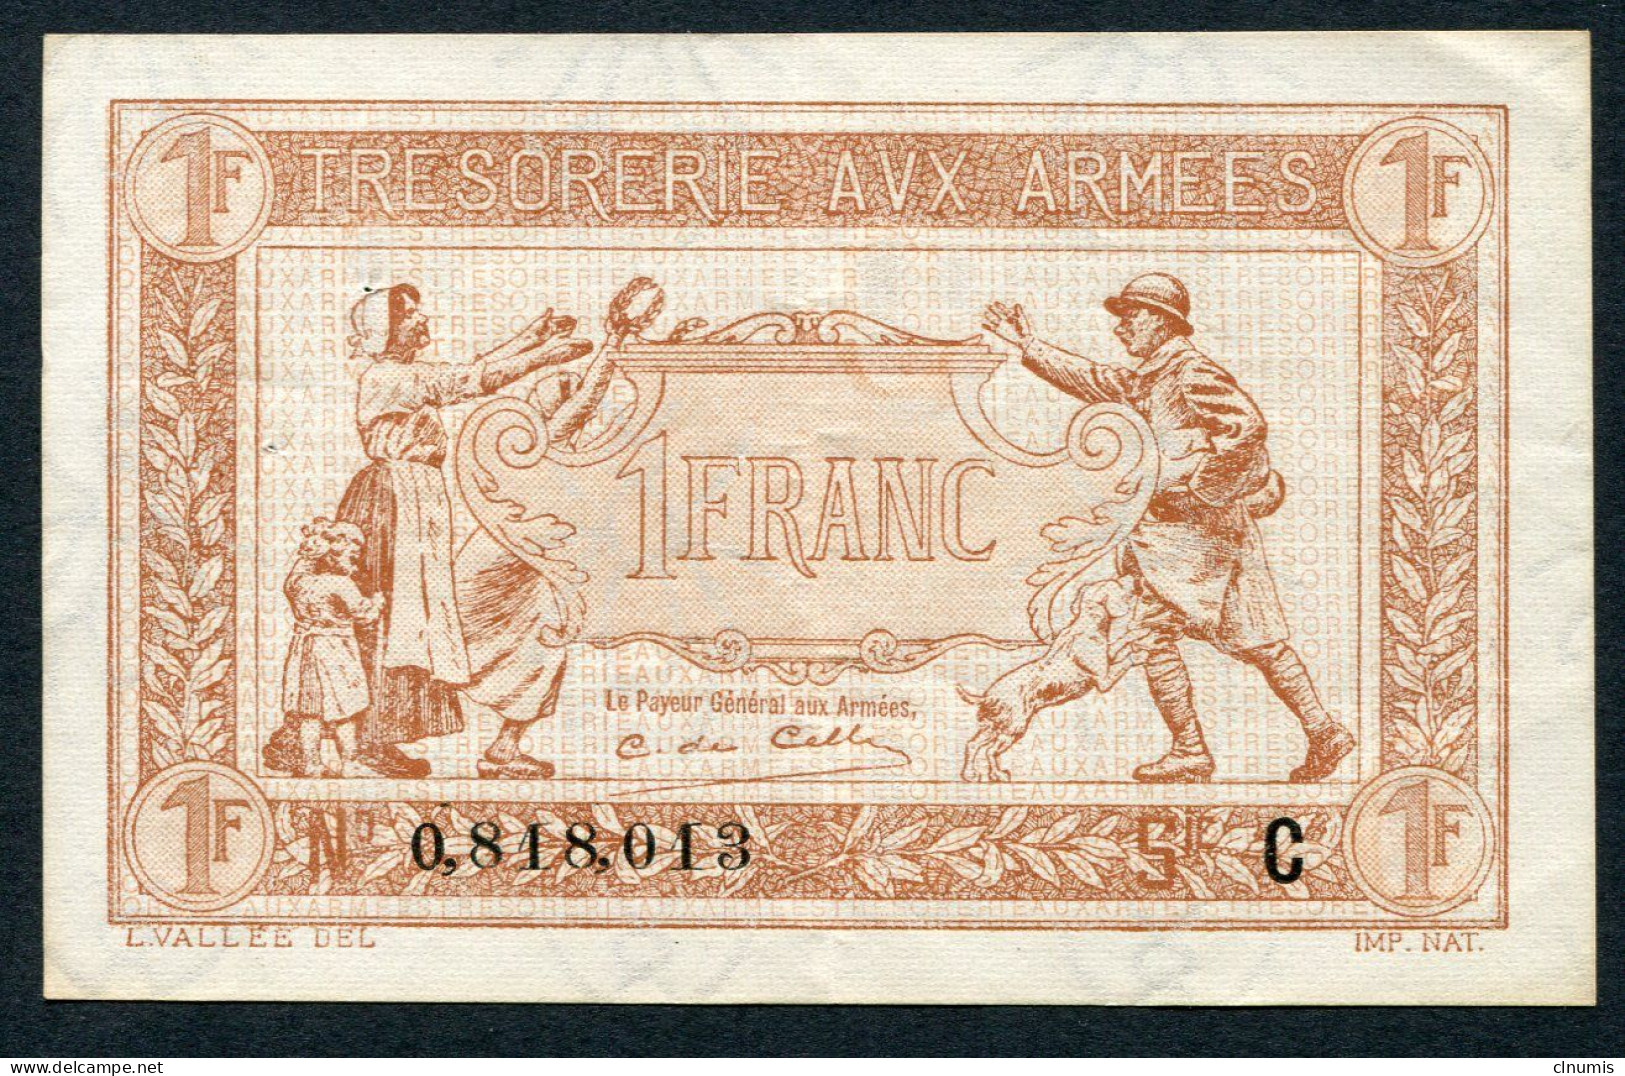 1 Franc Trésorerie Aux Armées 1917, Lettre C, N° 818013 - 1917-1919 Legerschatkist